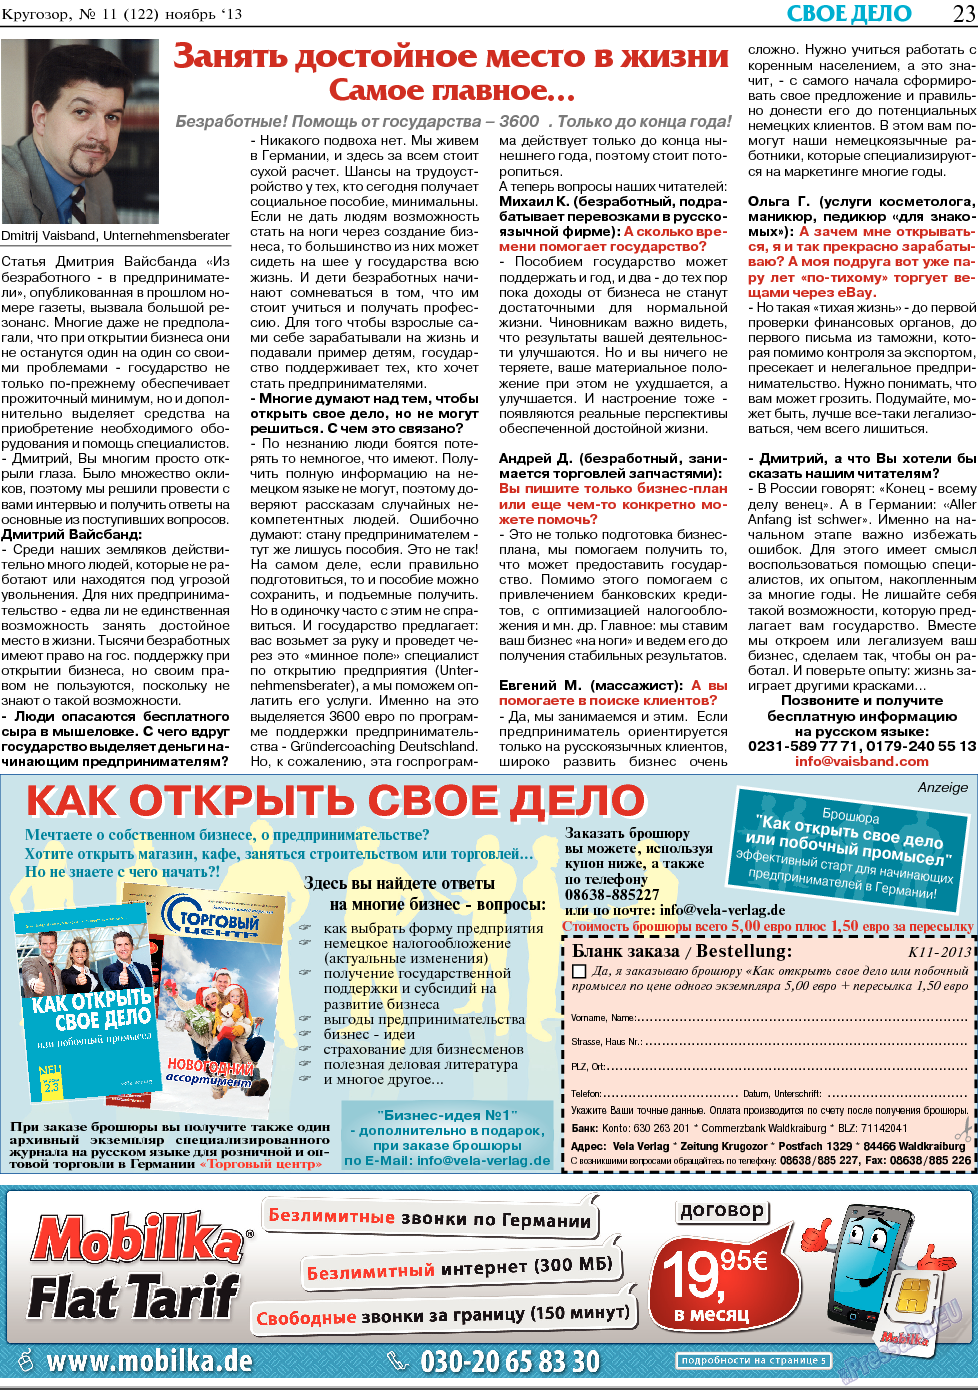 Кругозор, газета. 2013 №11 стр.23